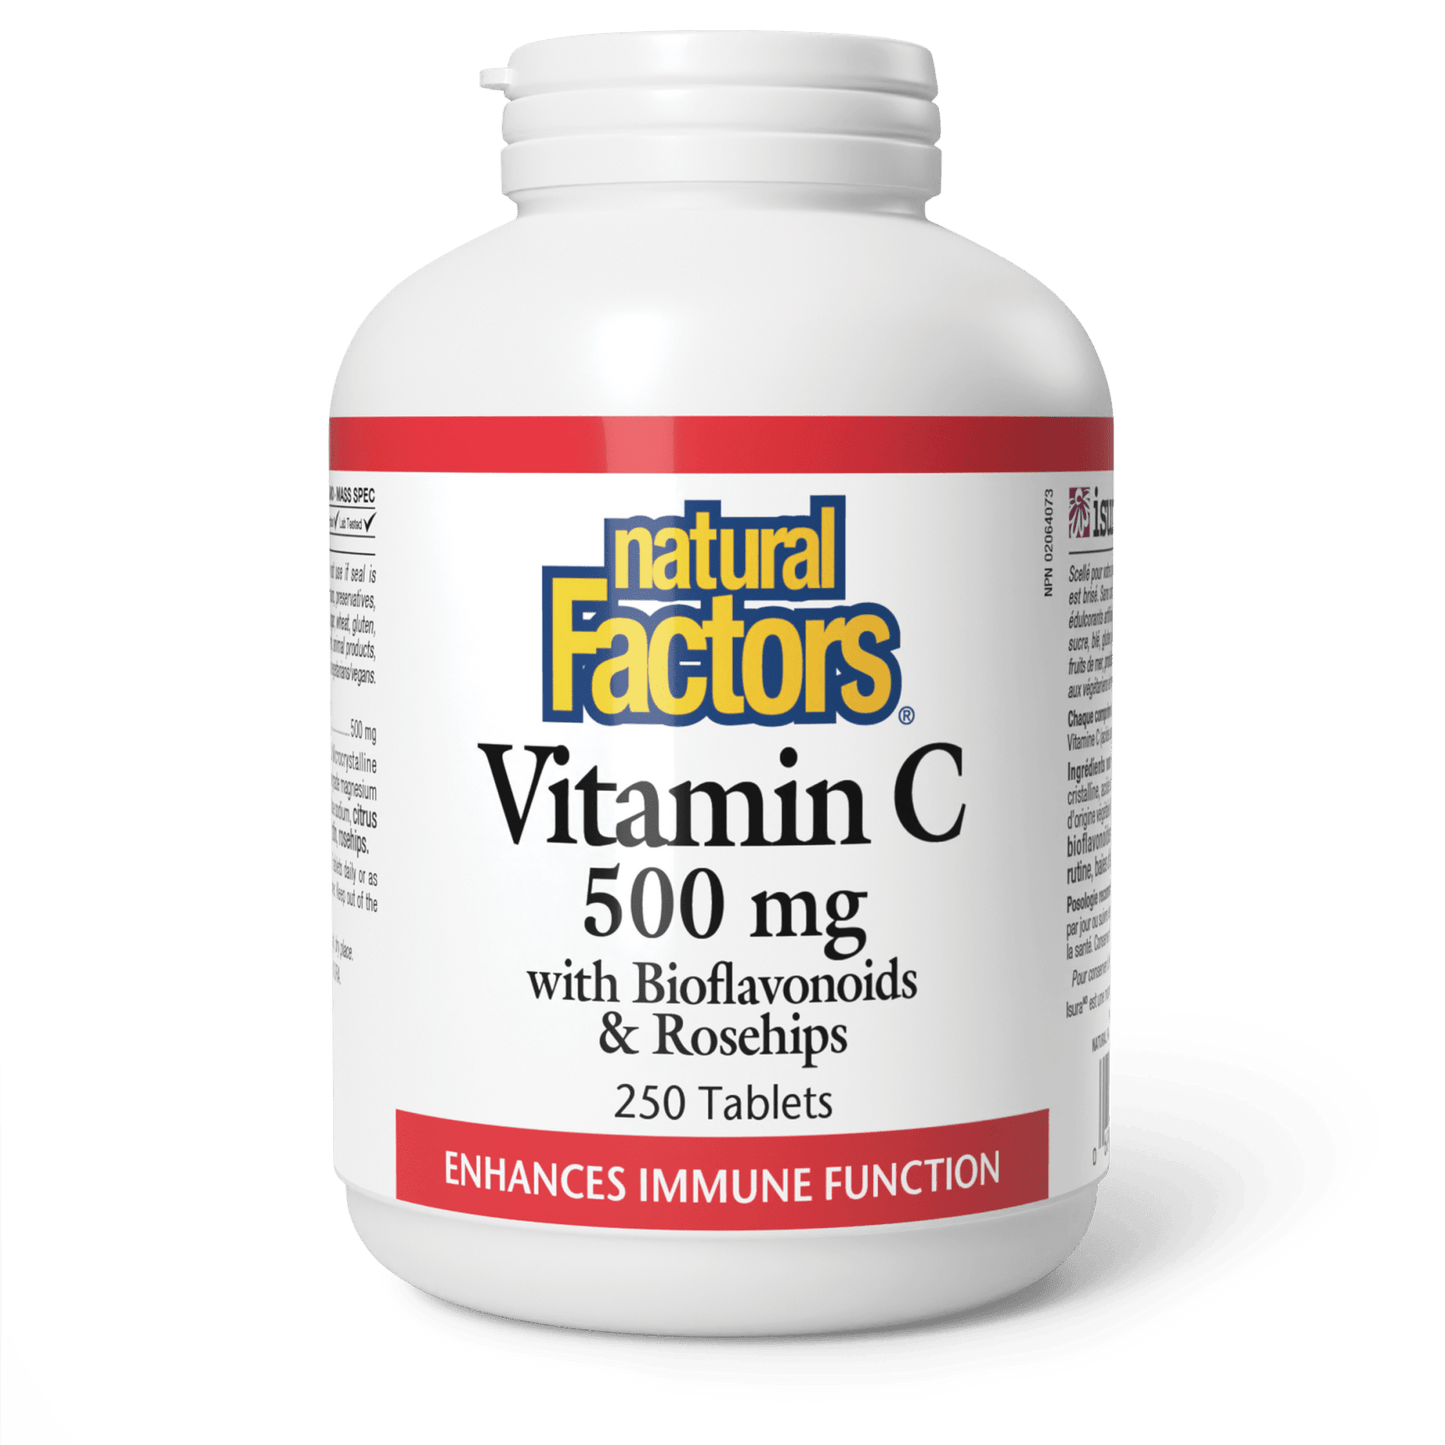 Vitamin C Plus Bioflavonoids & Rosehips 500 mg, Natural Factors|v|image|1302